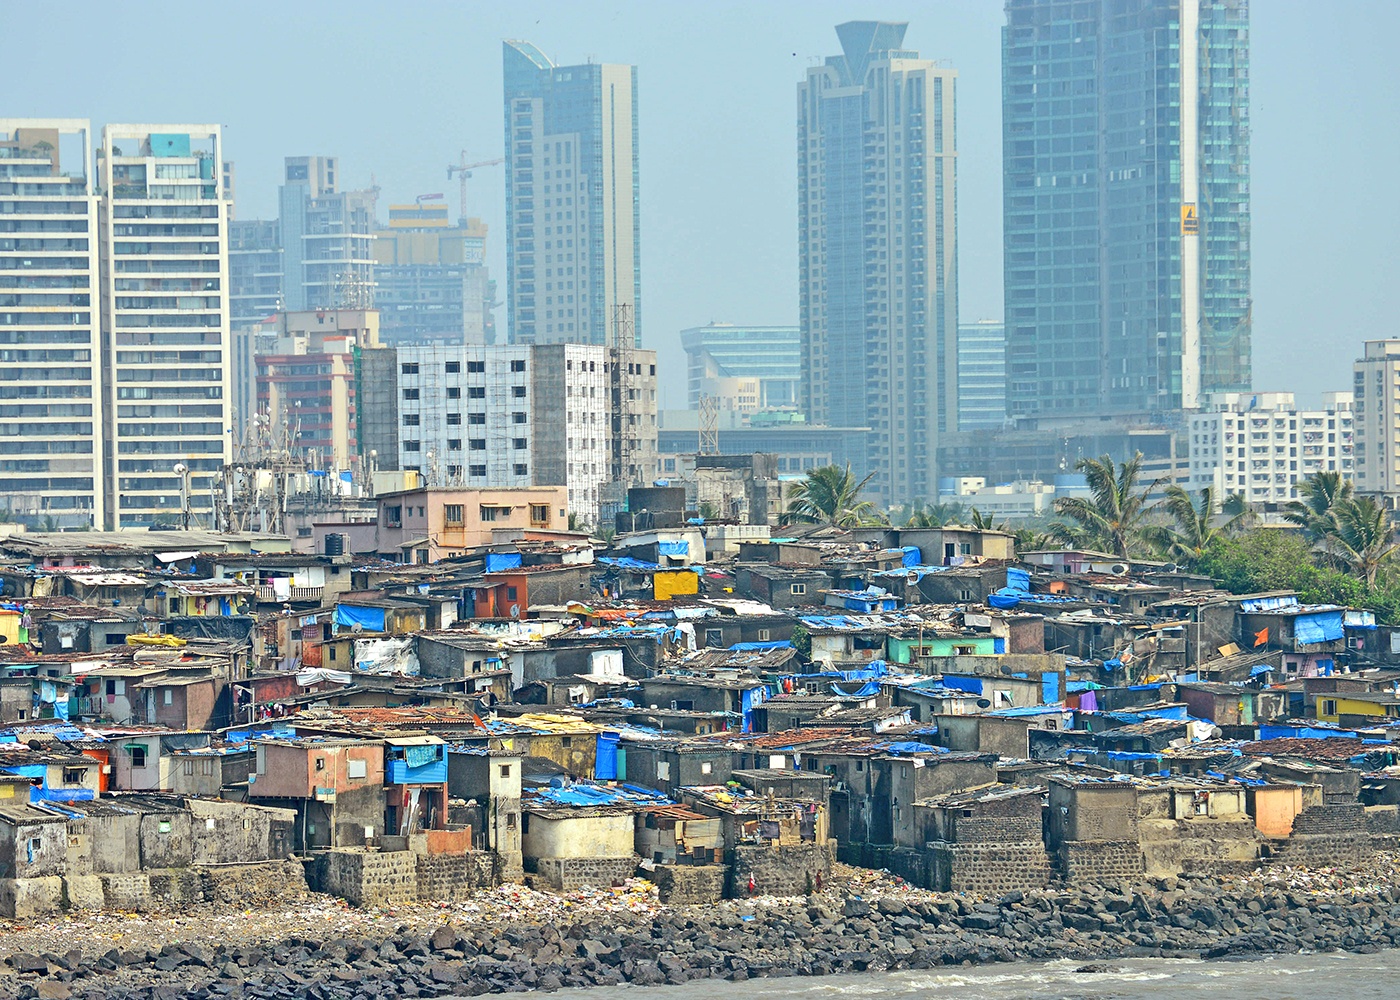 slum tourism pros